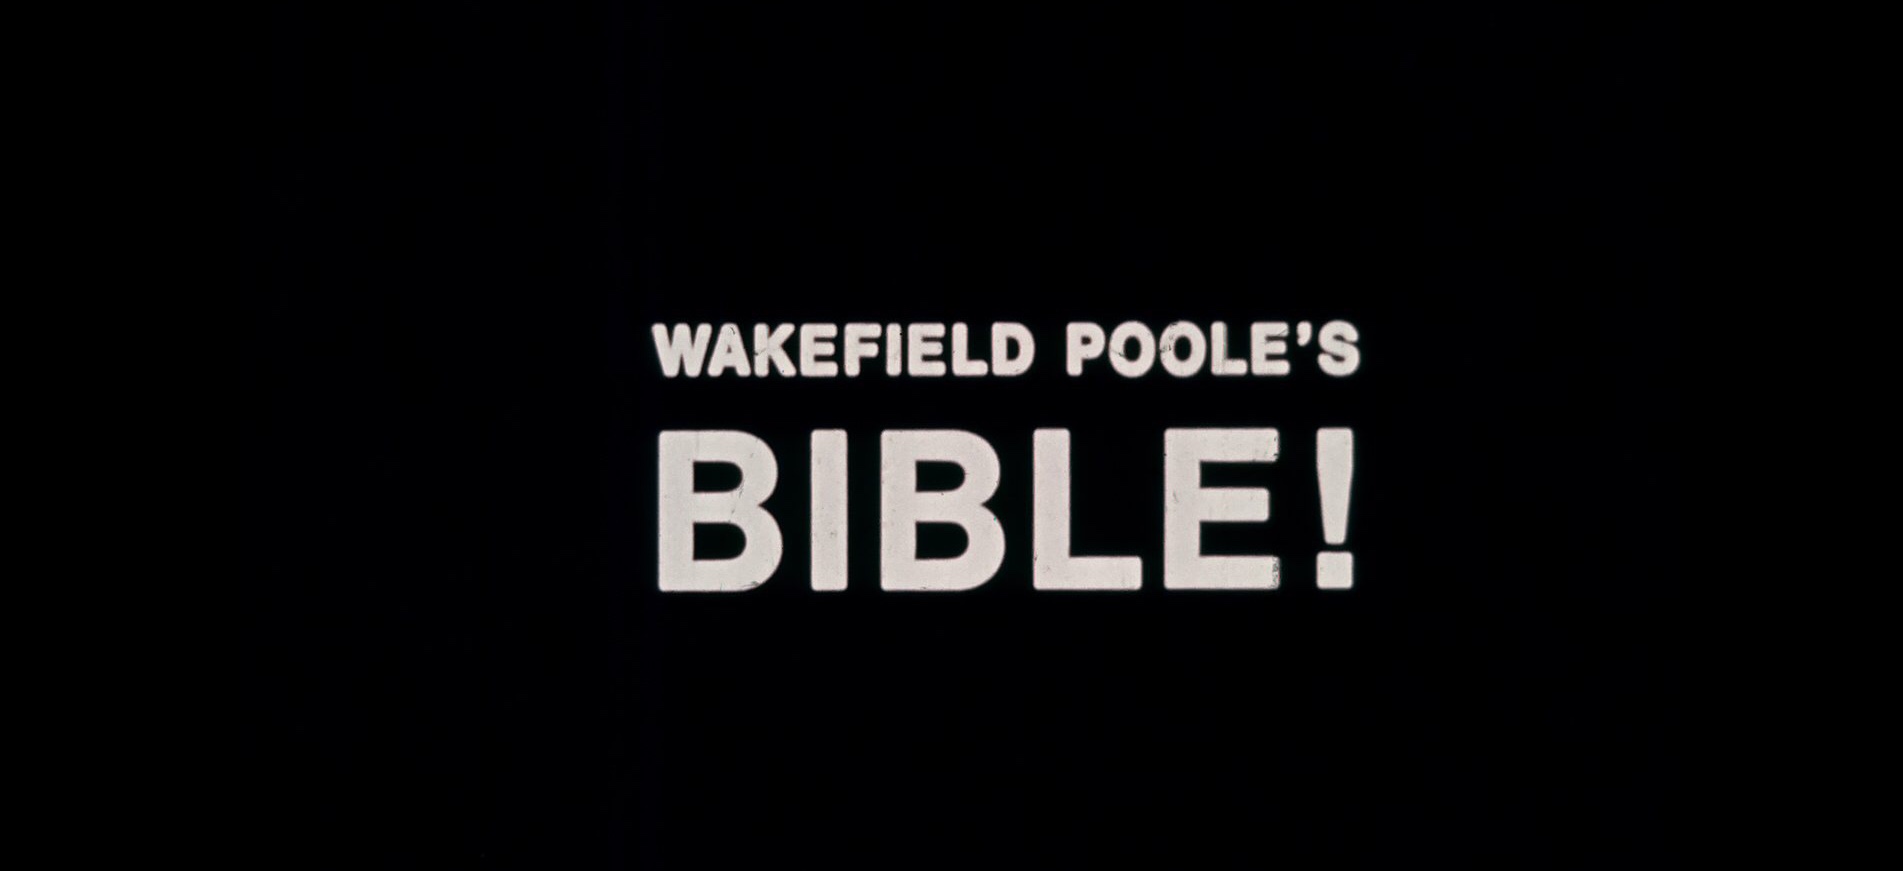 Bible! (1974) Screenshot 3 